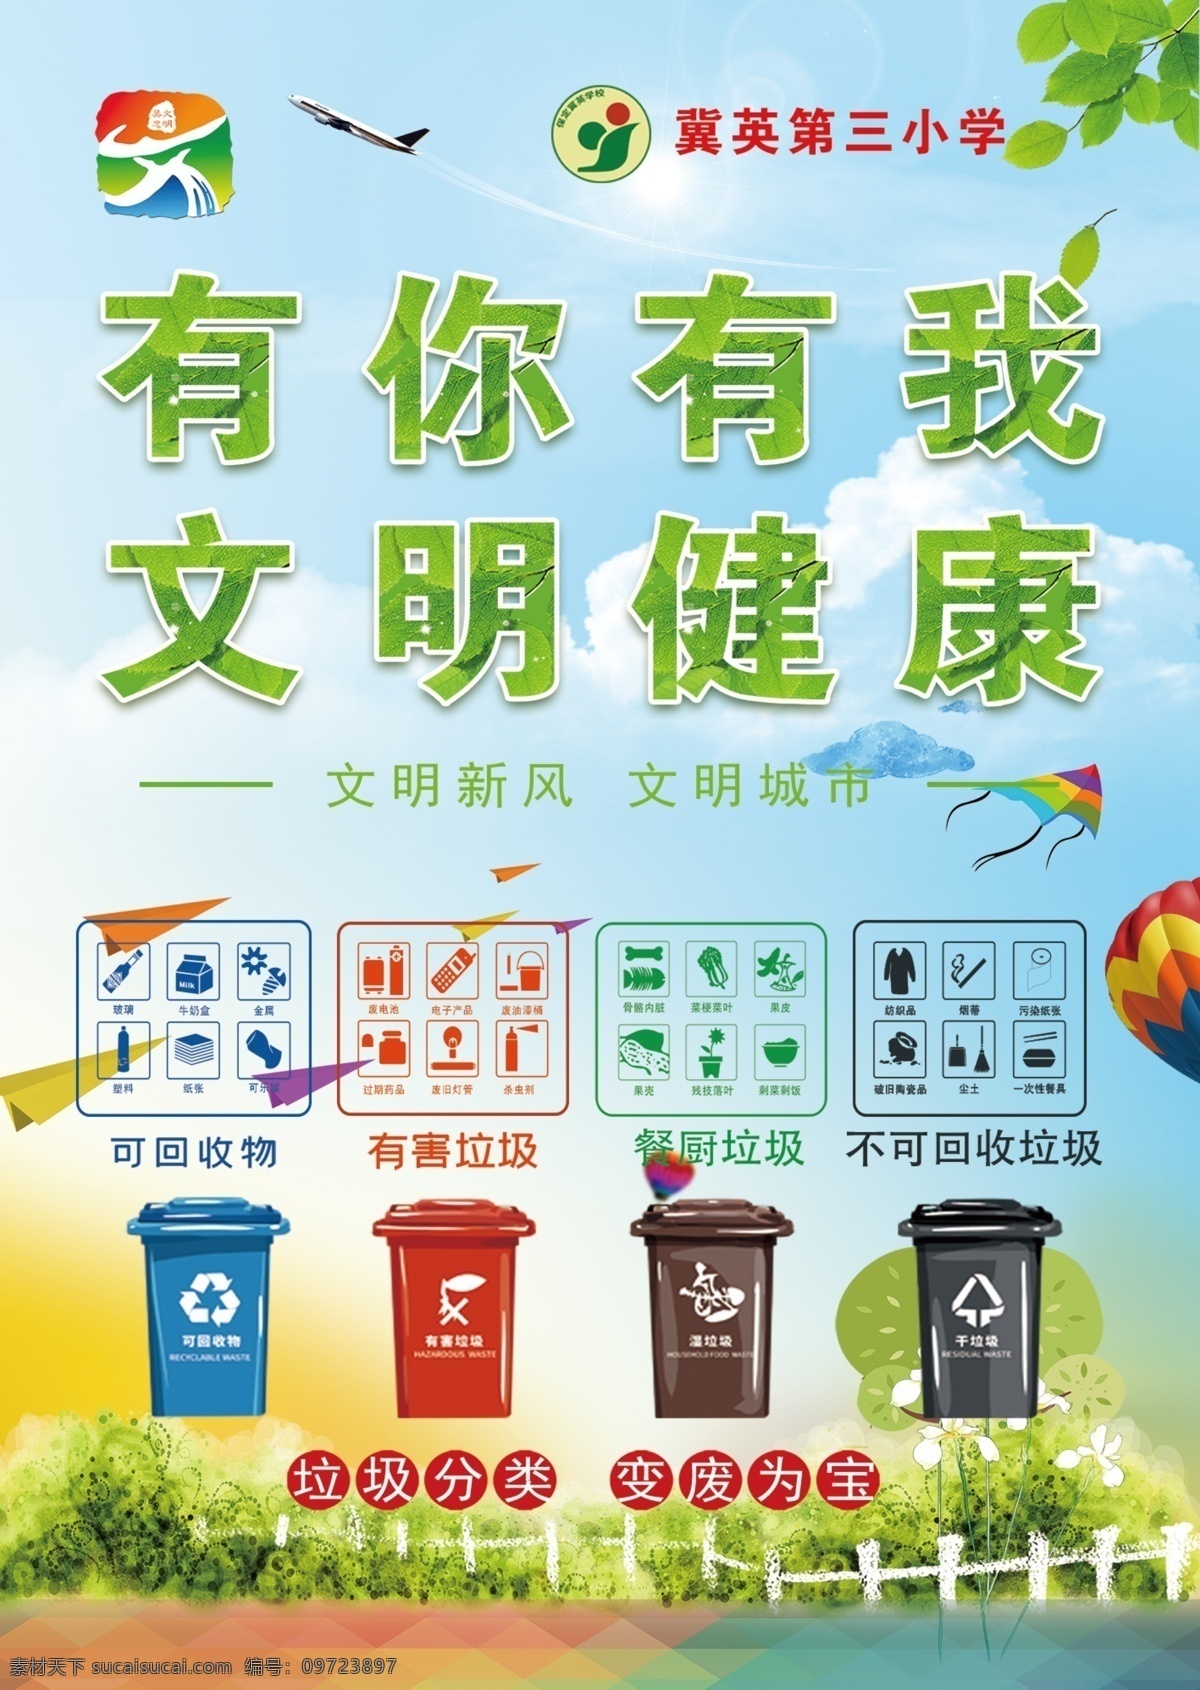 垃圾分类图片 垃圾分类 垃圾桶 绿色树叶 蓝天白云 大树 栏杆 草坪 热气球 展板